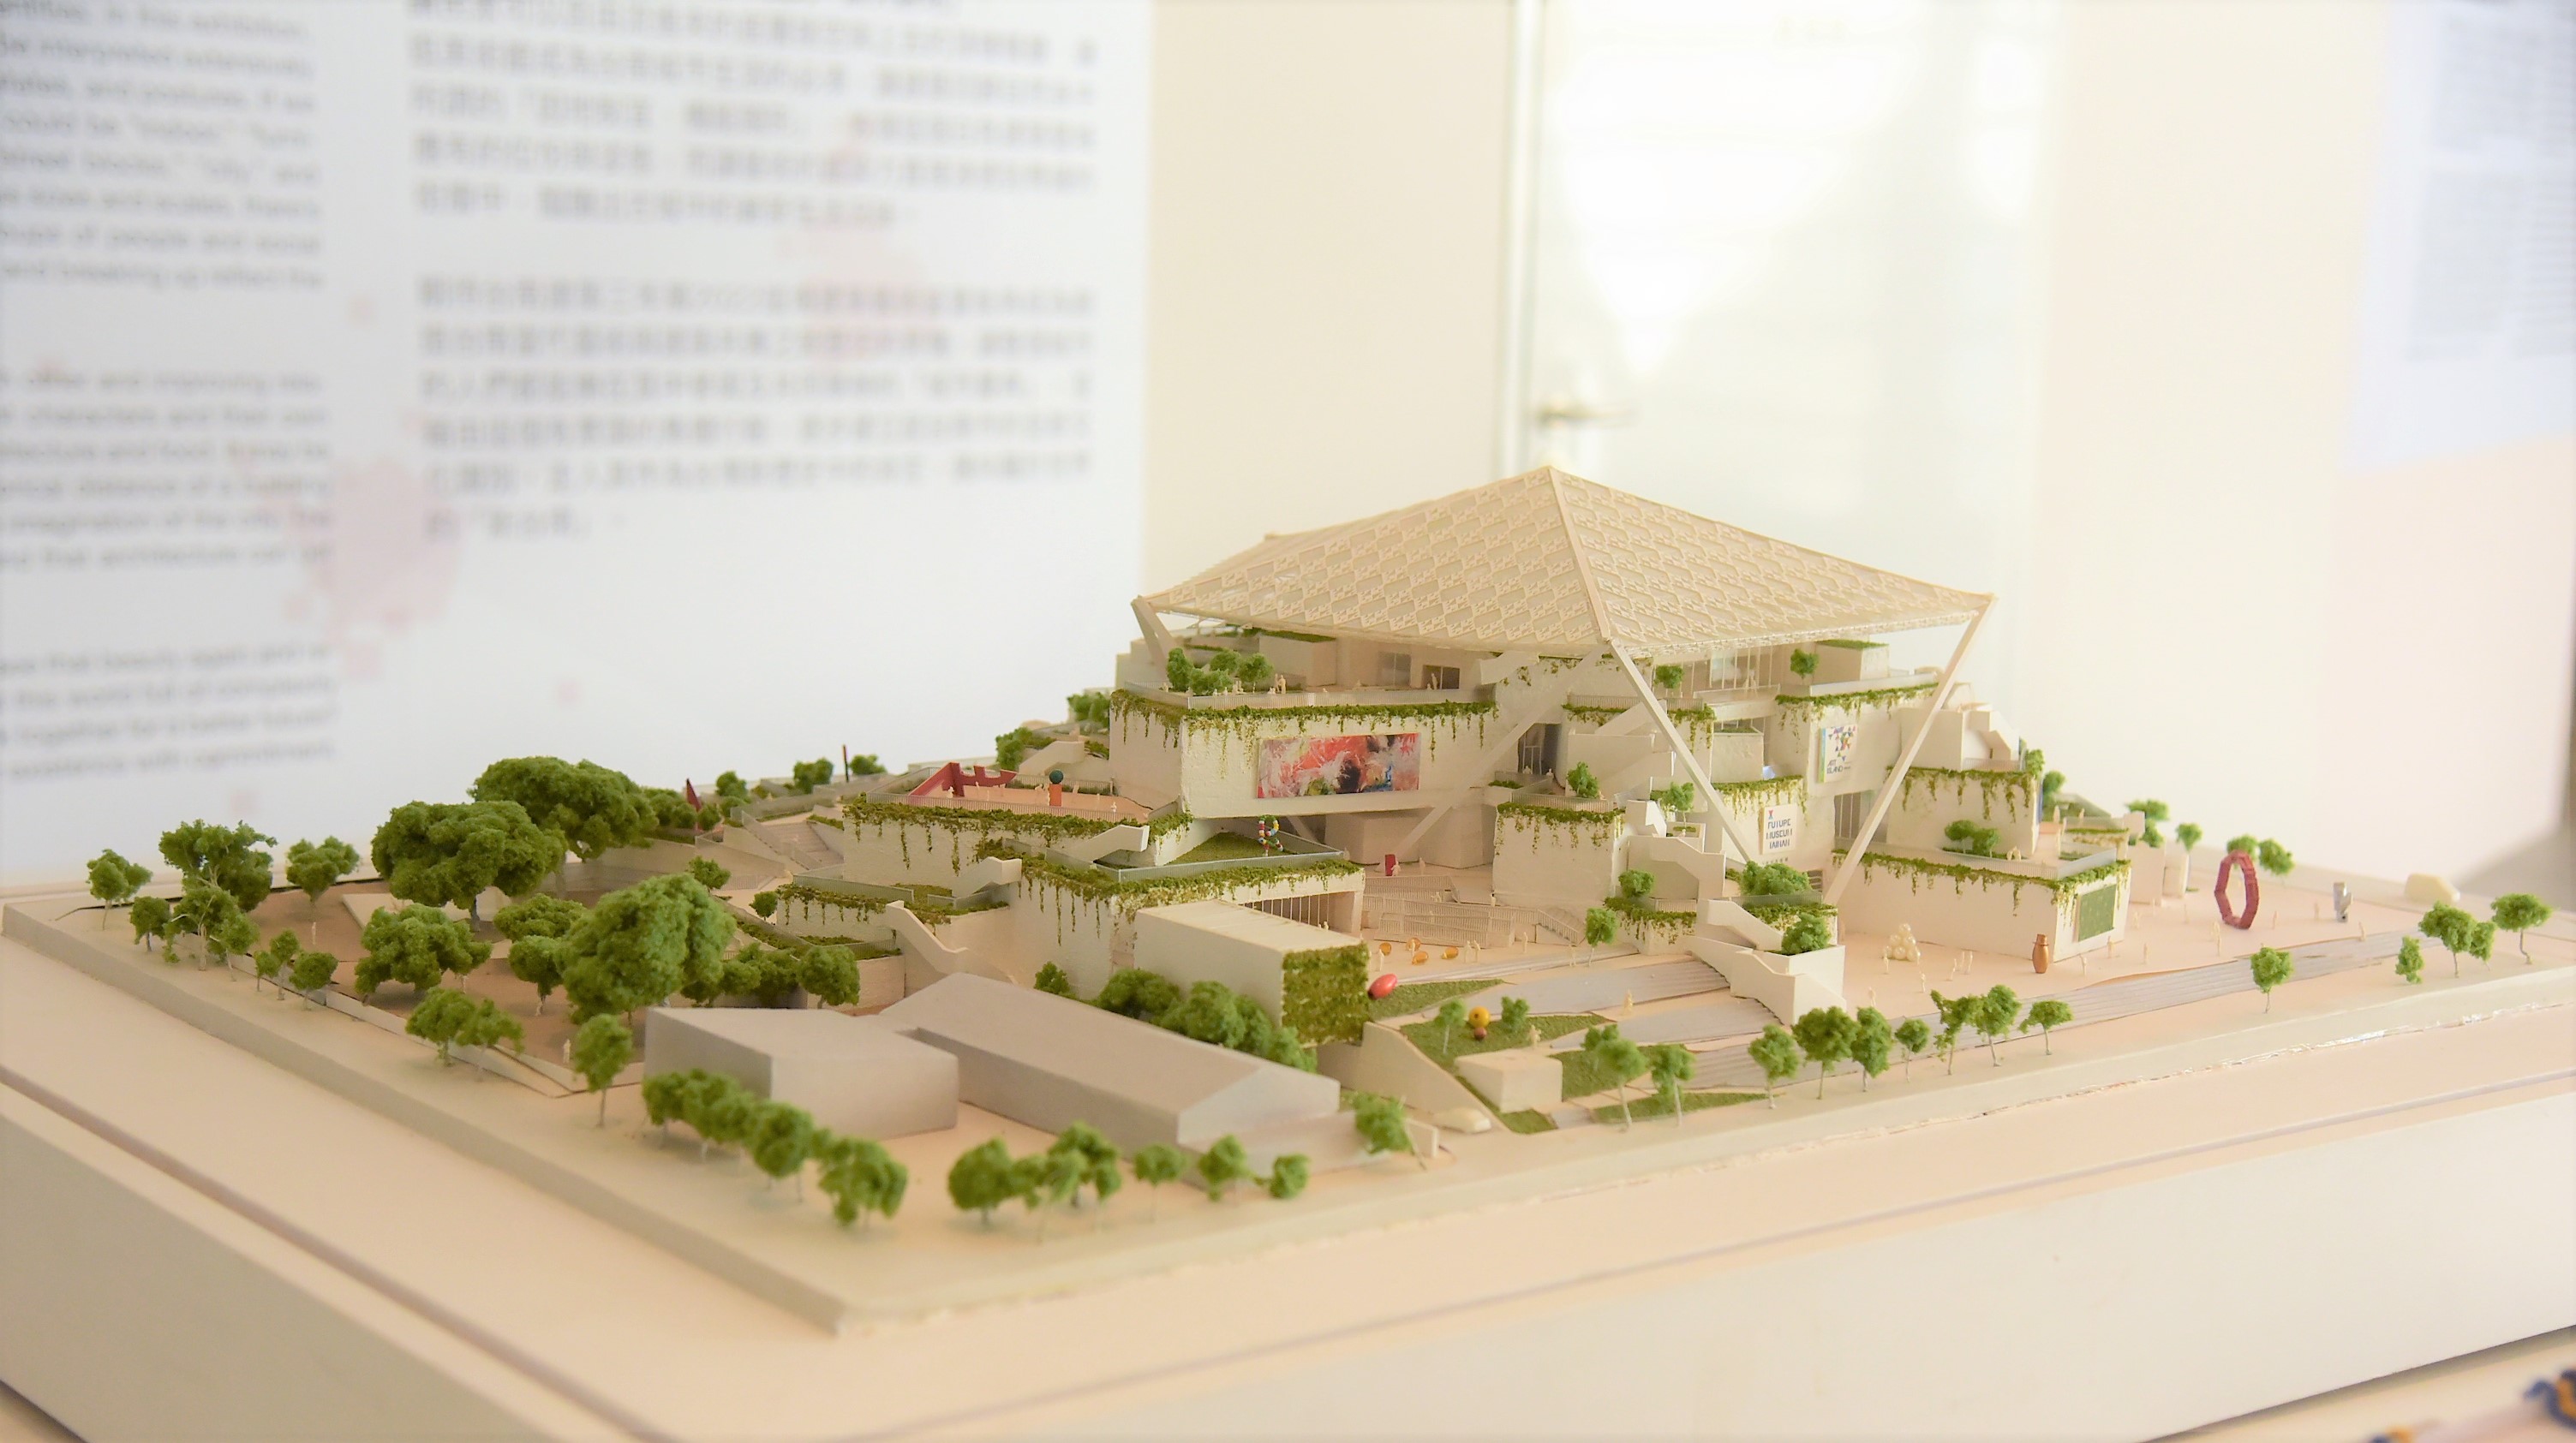 「建築，之間的距．離」盼能彰顯建築之於台南古城的文化變遷。(圖/林冠宏攝影)